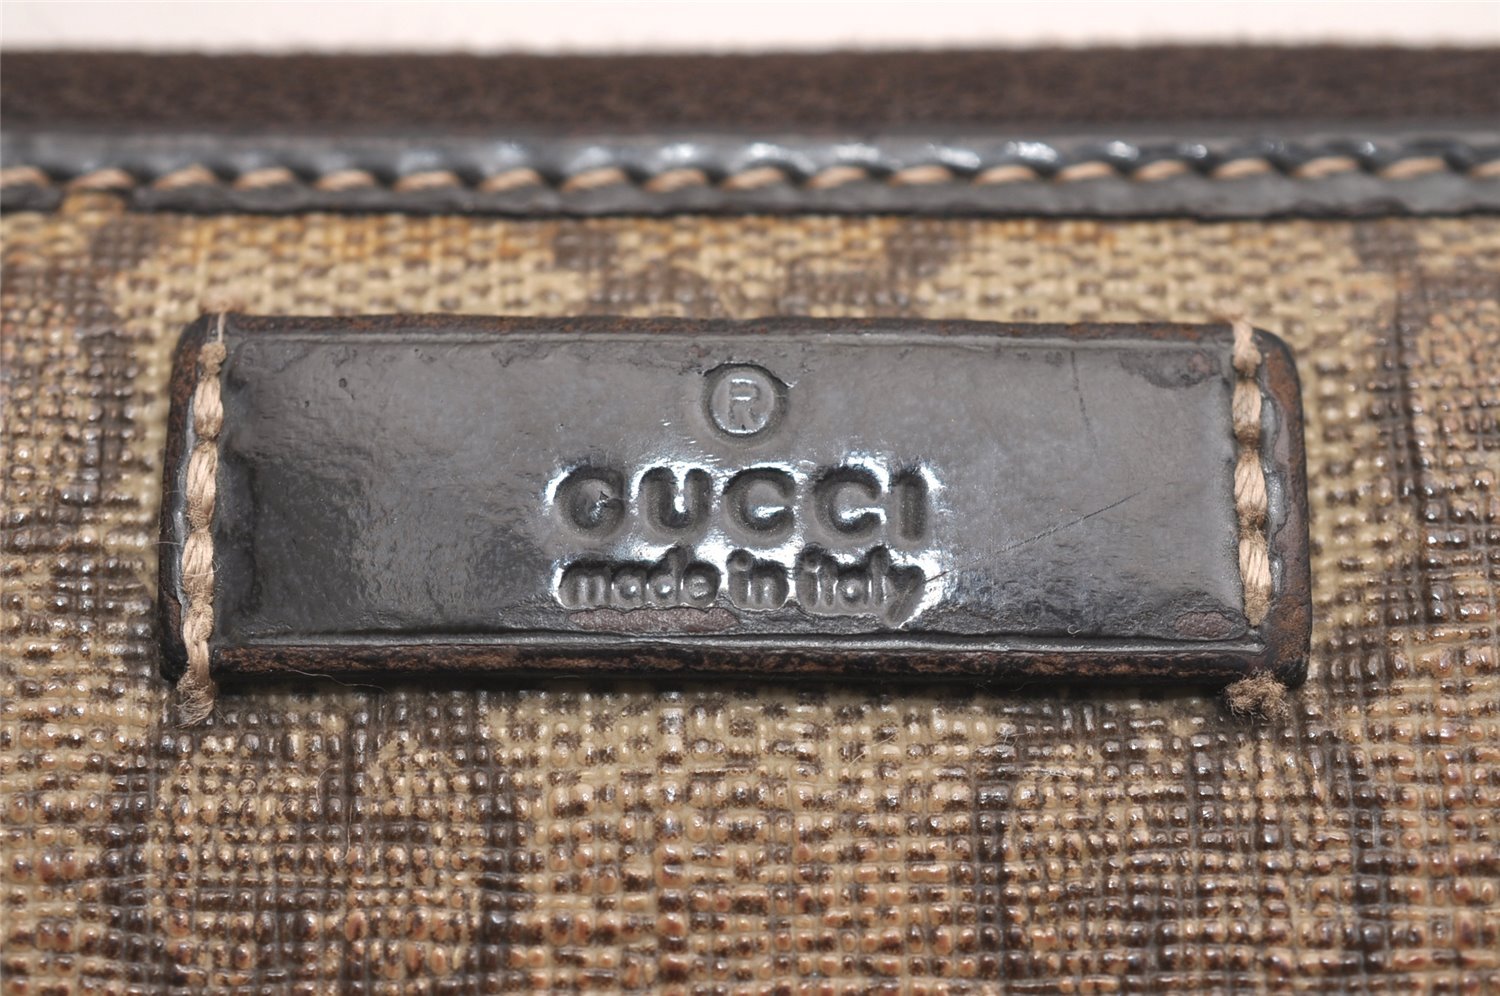 Authentic GUCCI Vintage Long Wallet Purse GG PVC Leather 207464 Brown Junk 4263J